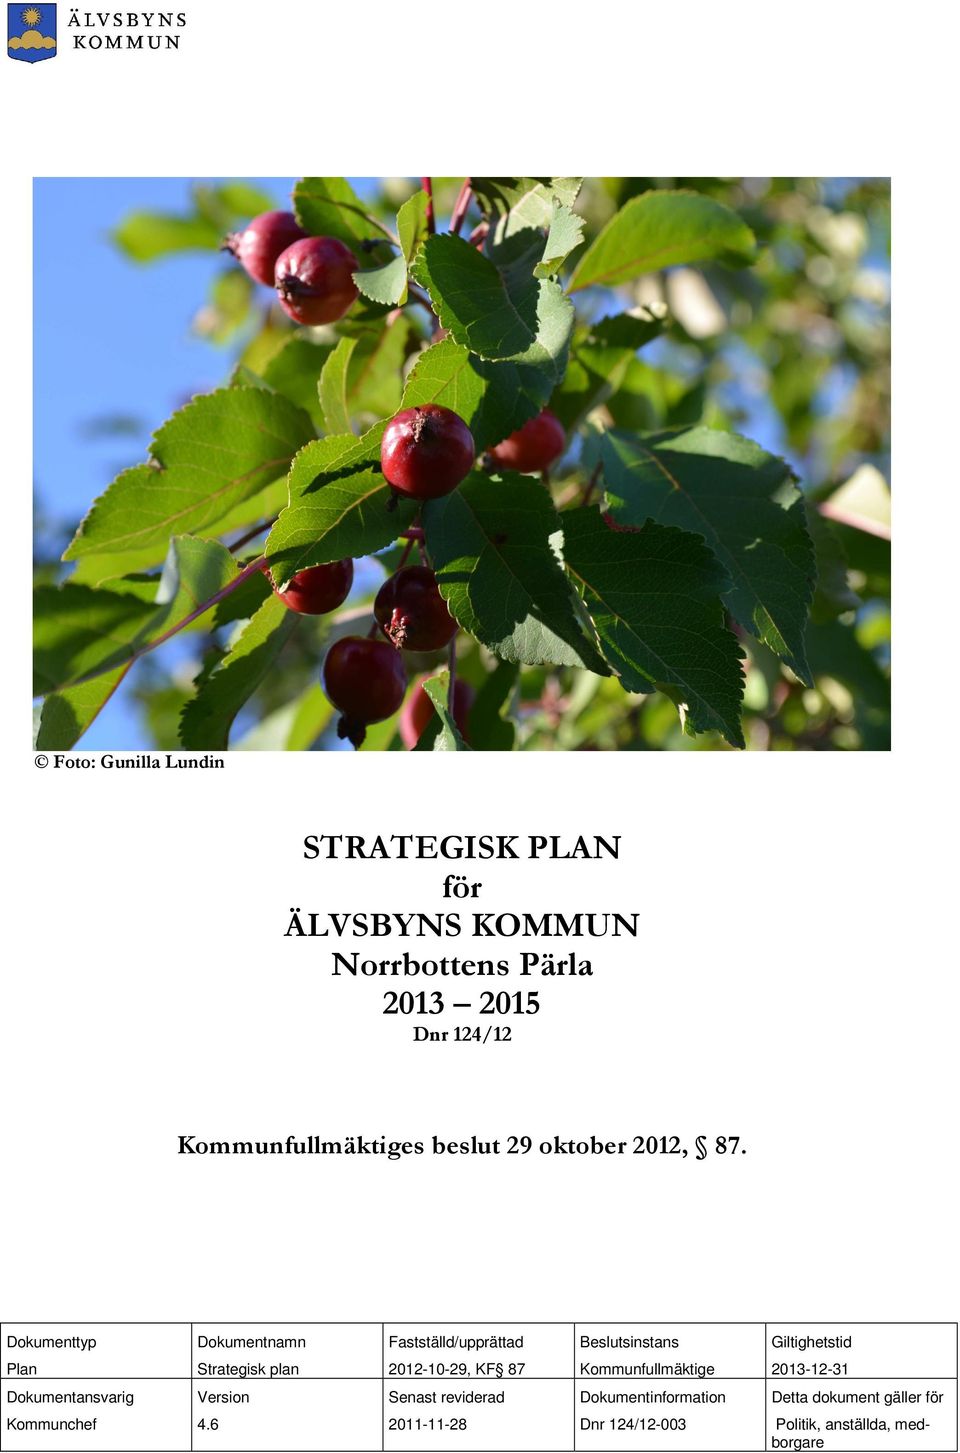 Dokumenttyp Dokumentnamn Fastställd/upprättad Beslutsinstans Giltighetstid Plan Strategisk plan 2012-10-29, KF